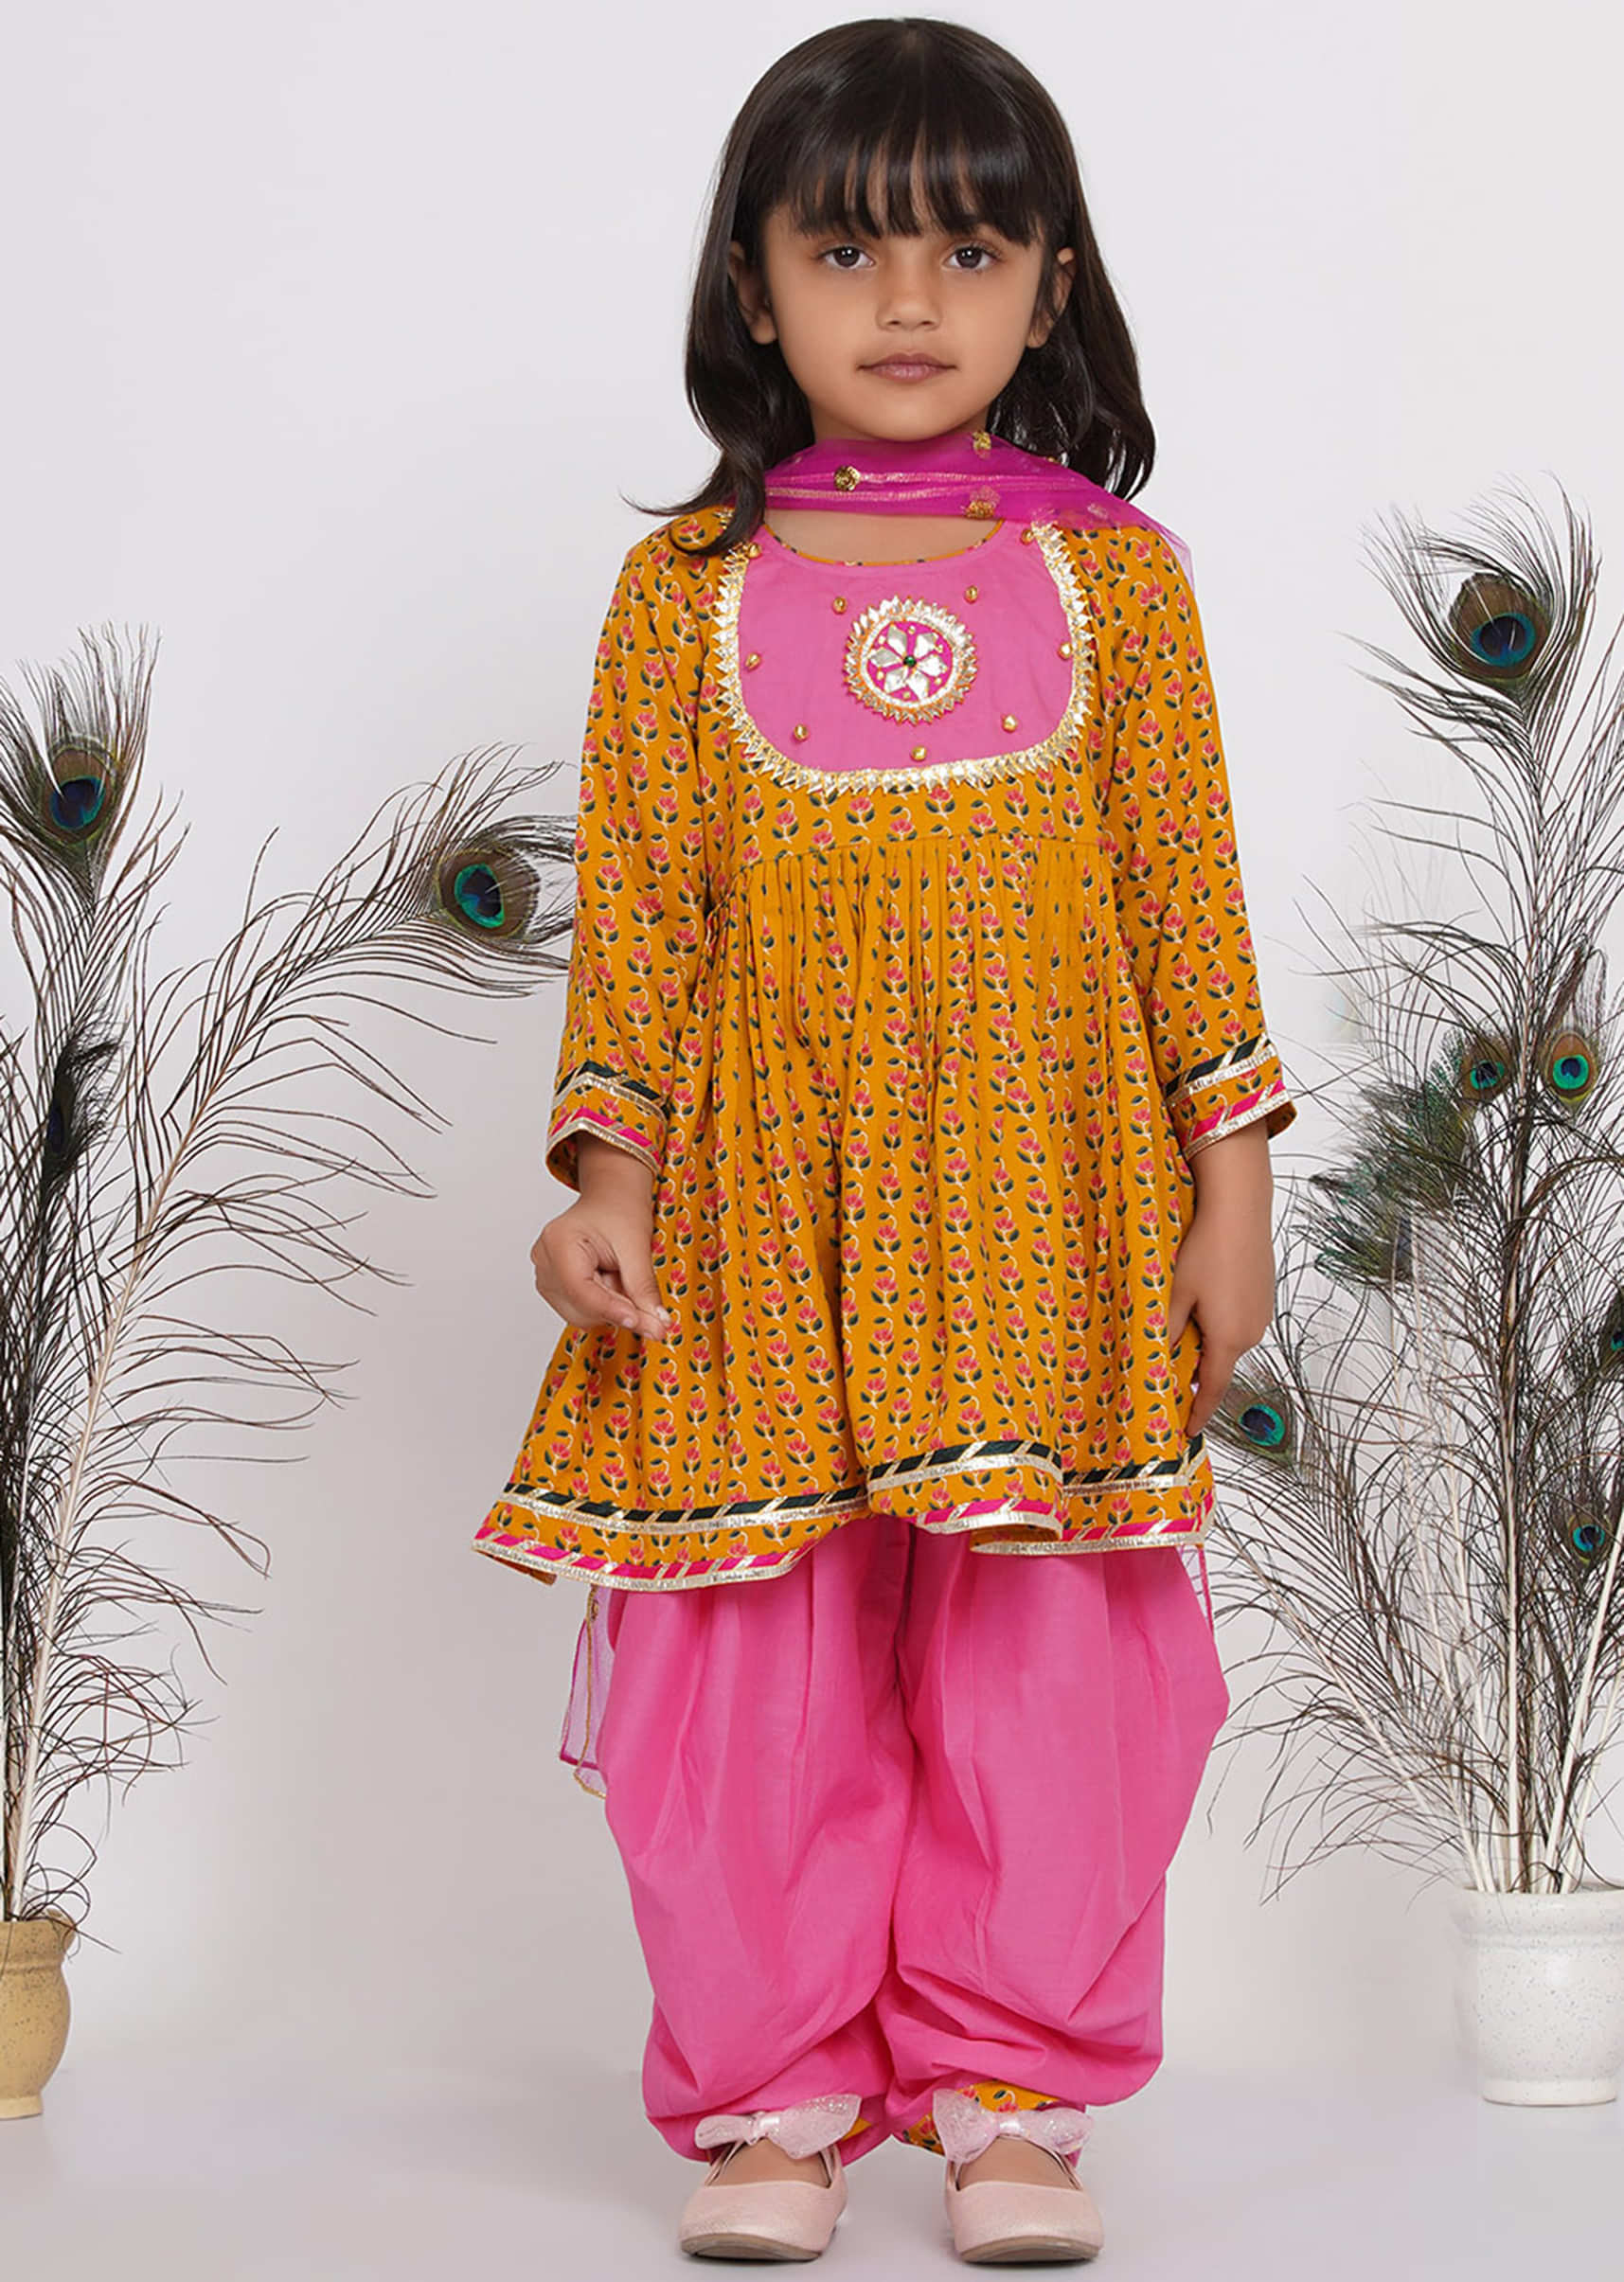 Kalki Girls Pink Jaipuri Salwar Suit With Dupatta